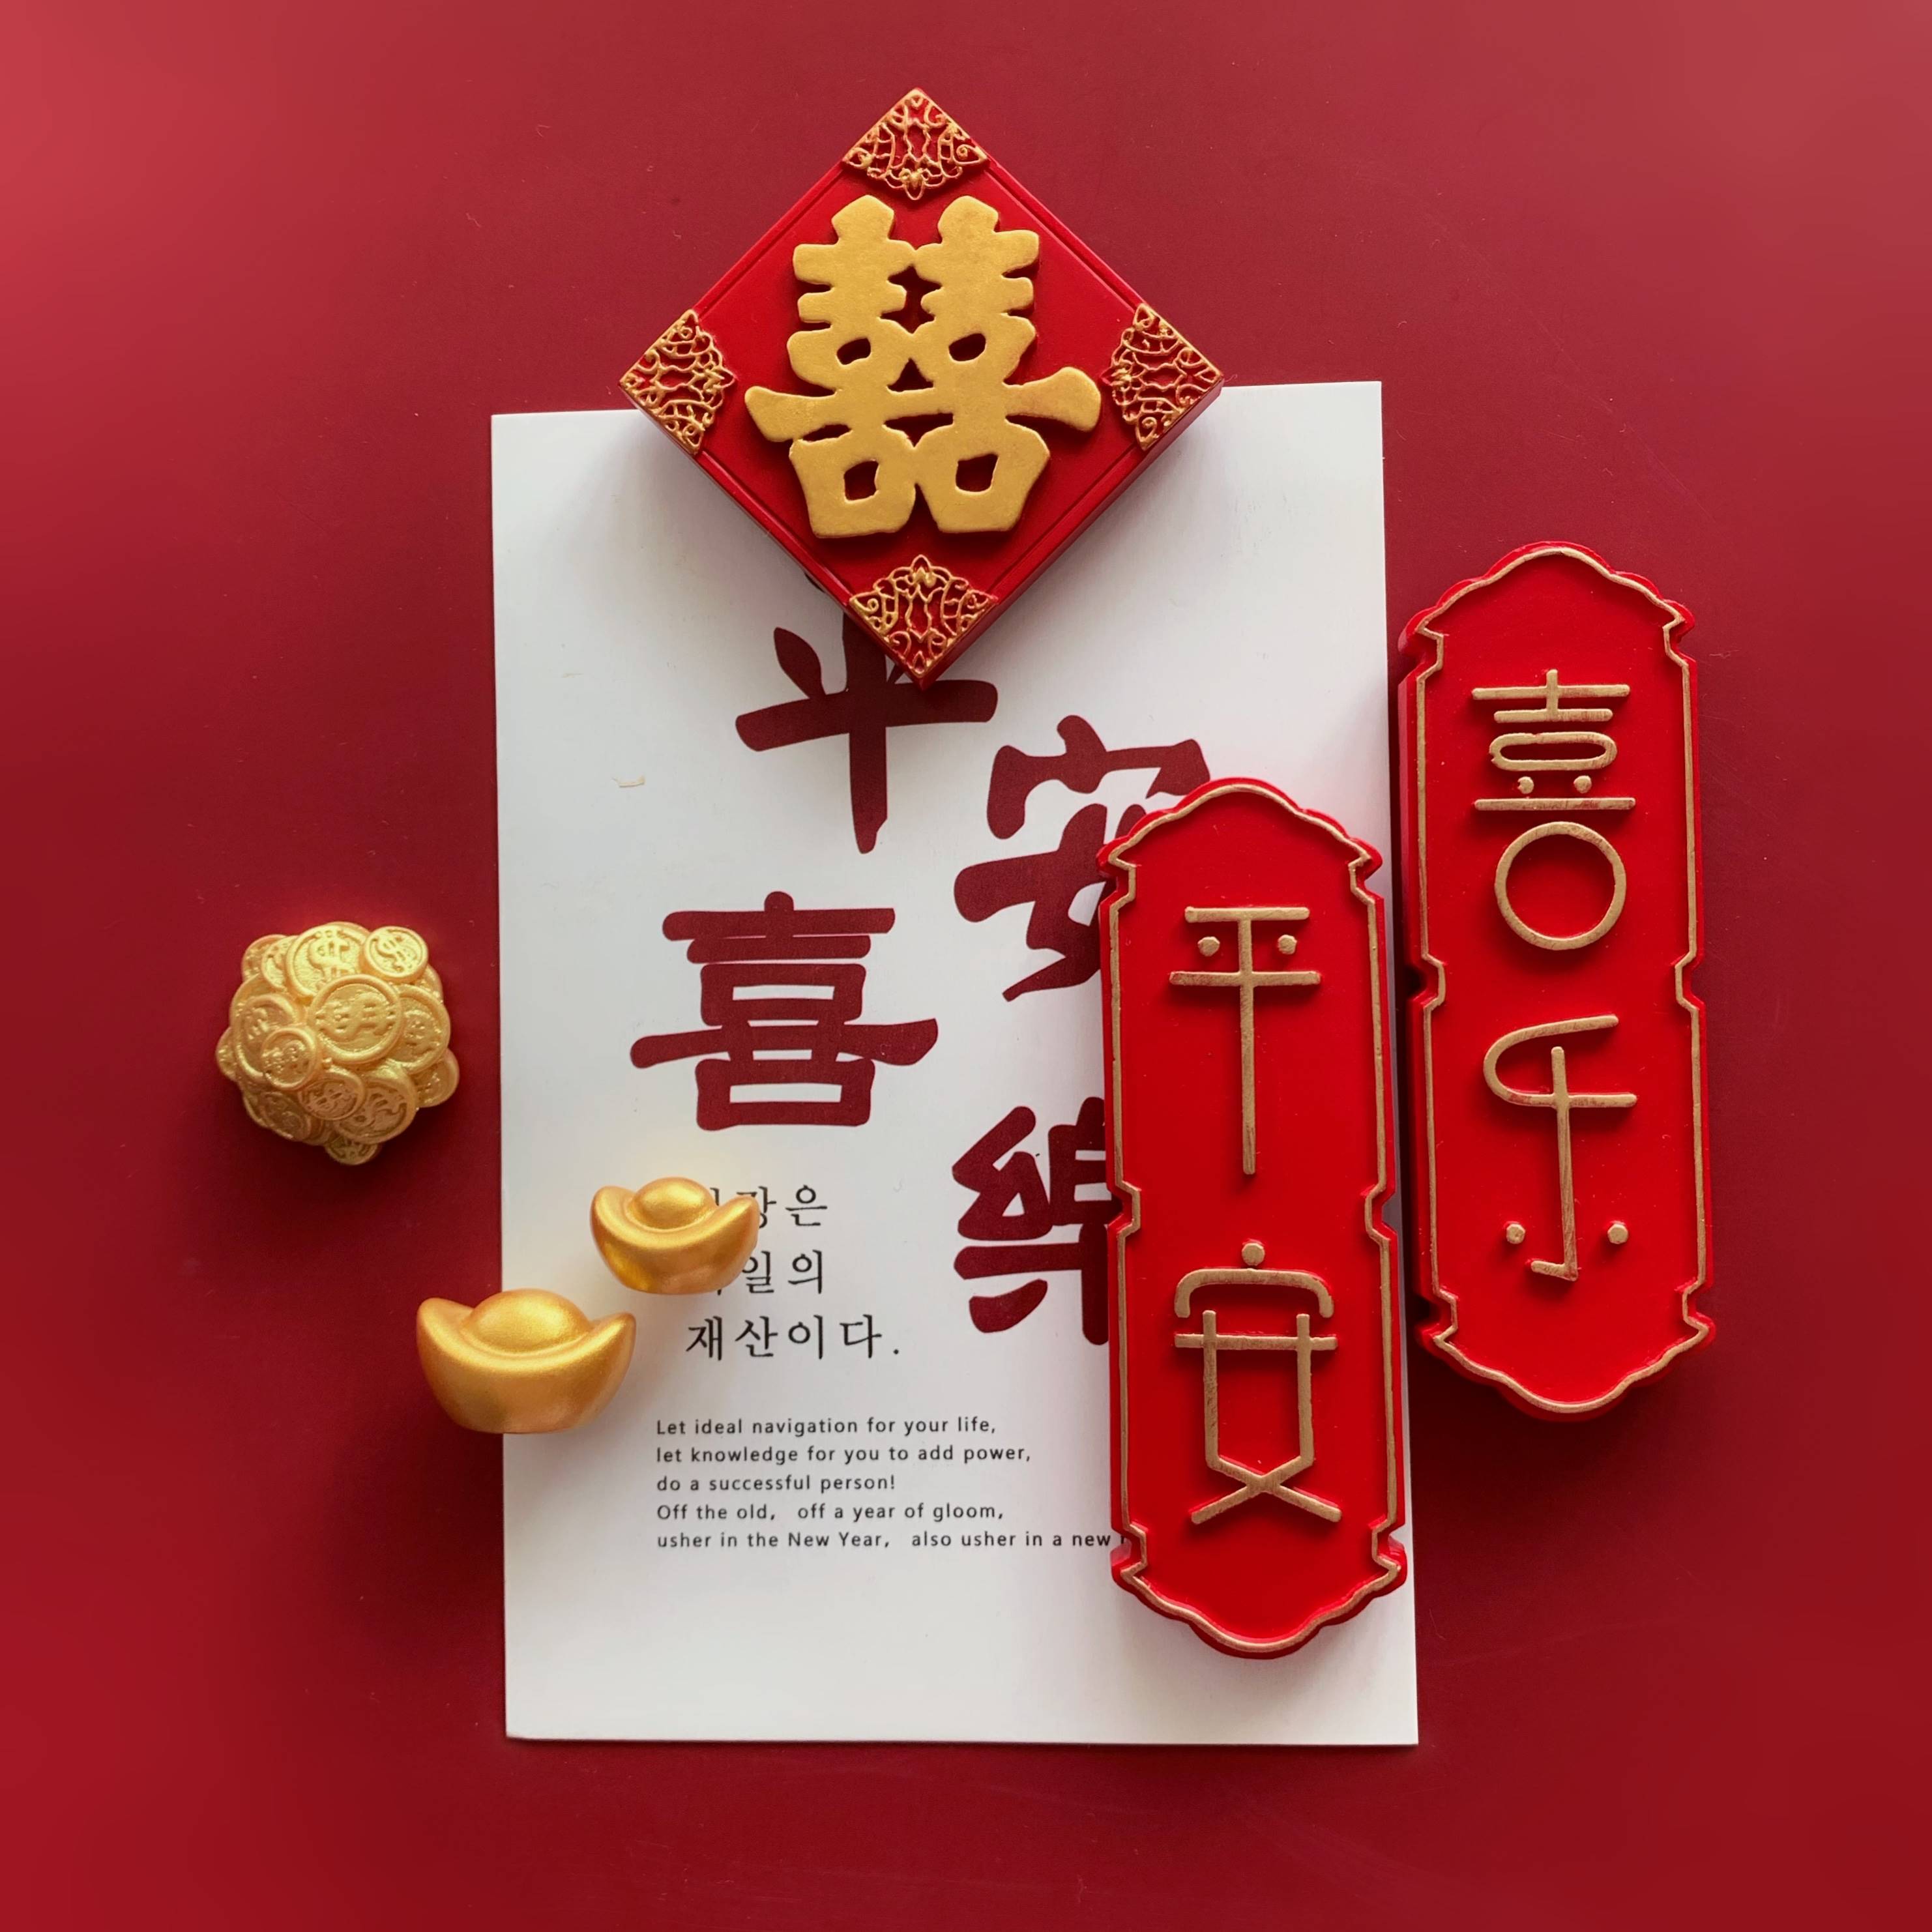 中国风红色喜字结婚冰箱贴 磁贴 平安喜乐 创意文字照片白板磁铁